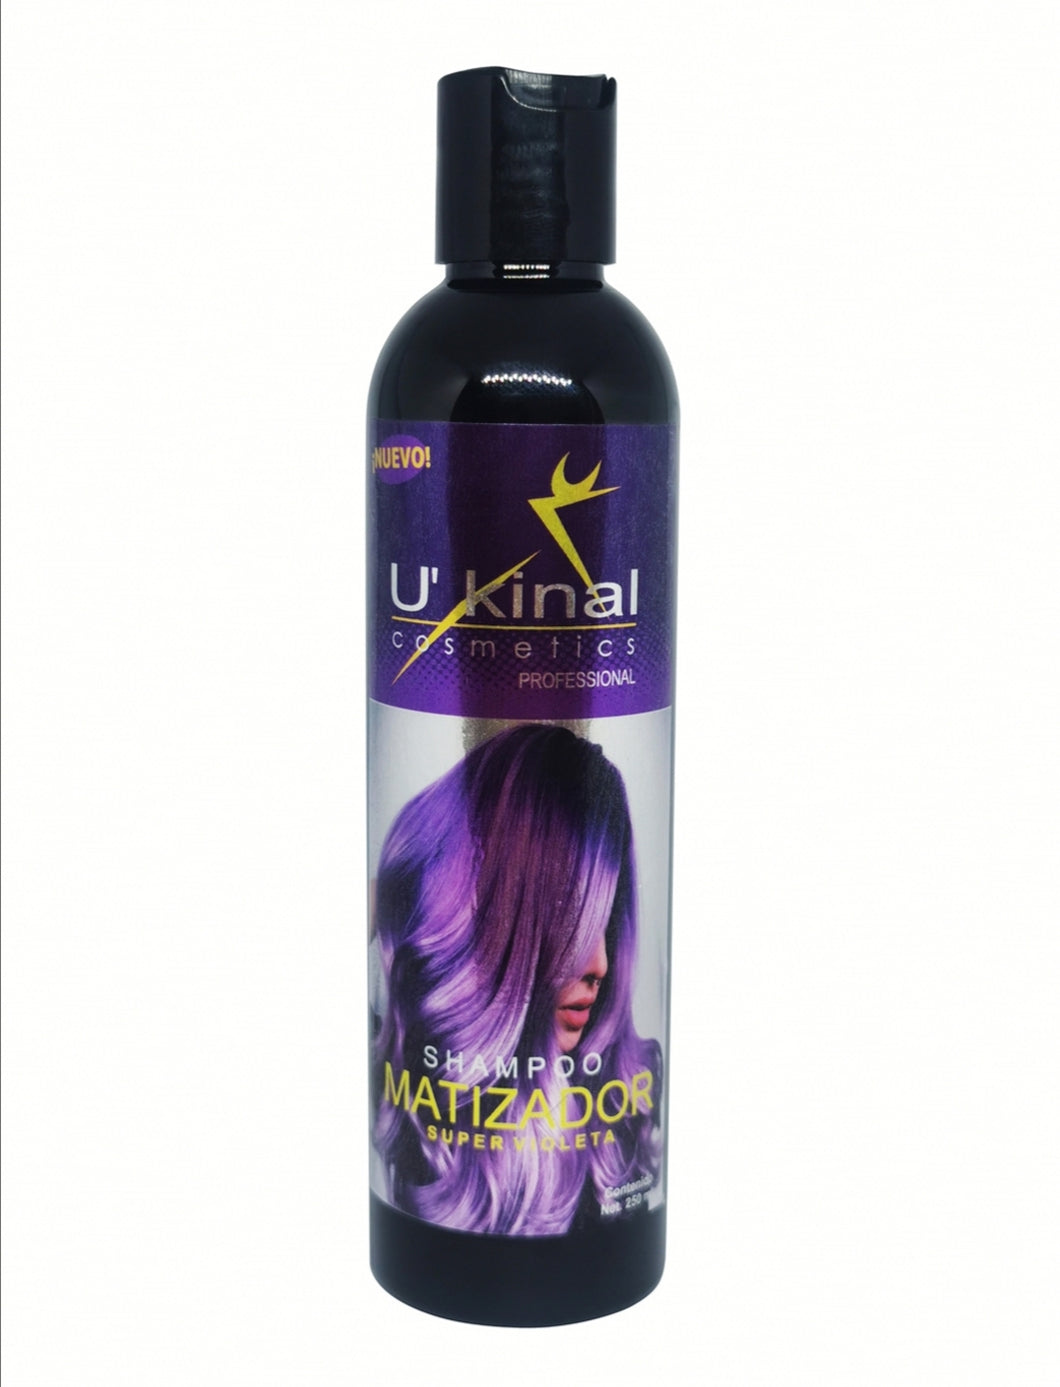 Shampoo Matizador Ultra Violeta 250ml